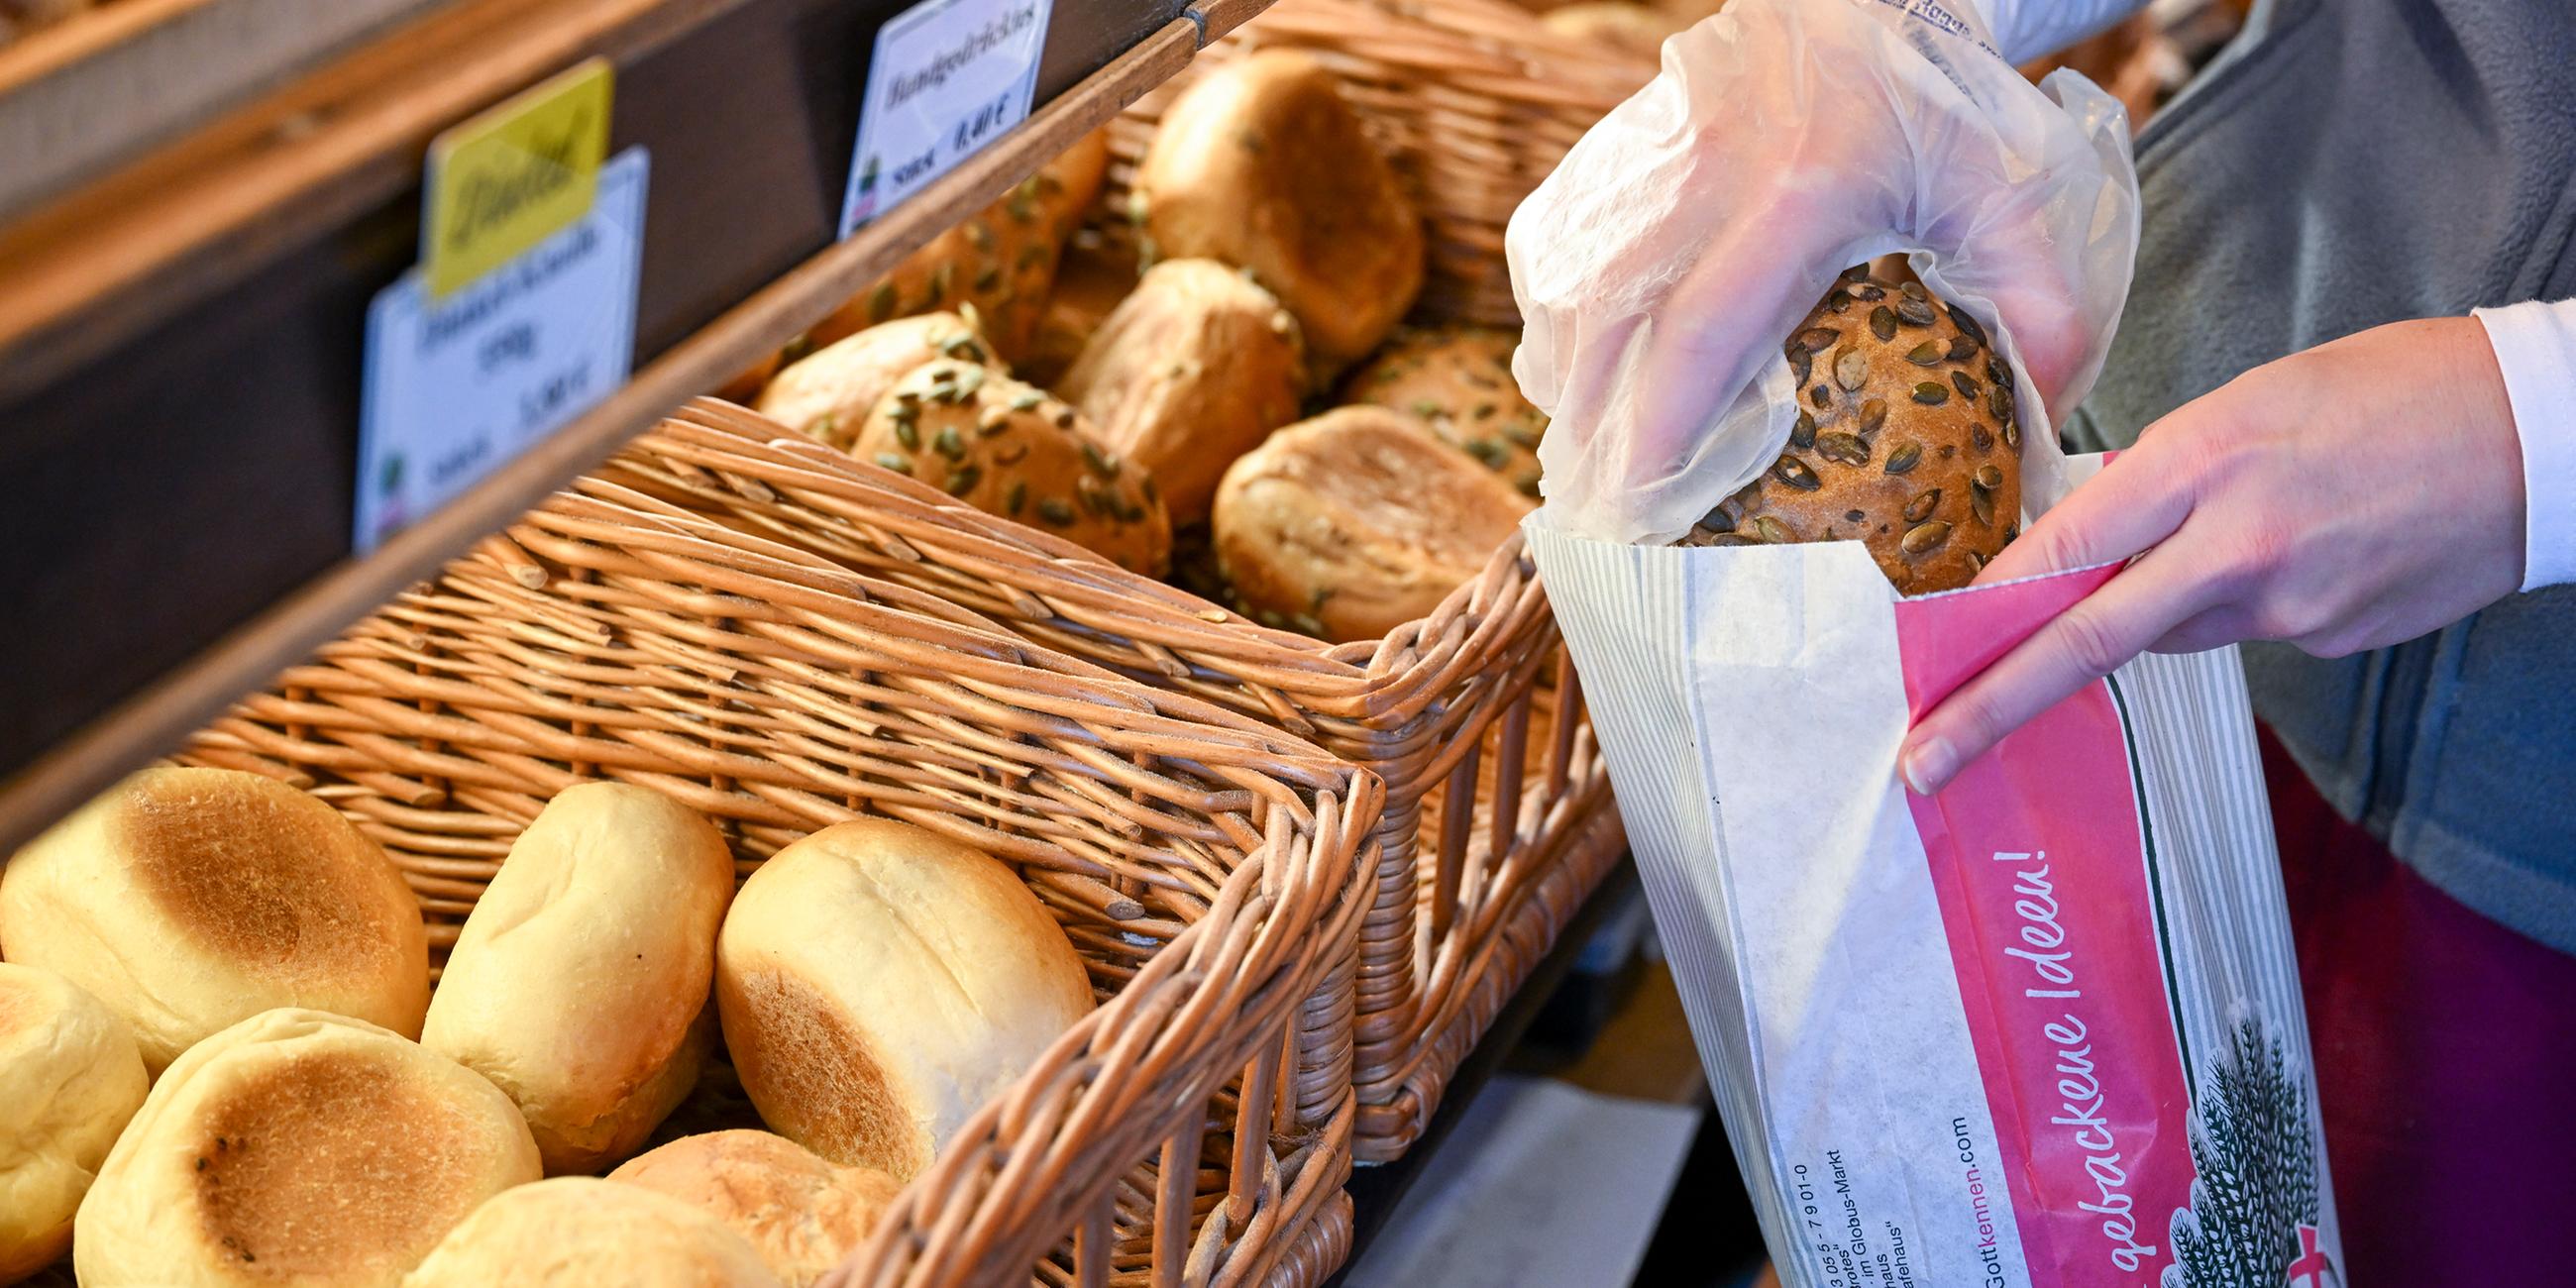 Brote und Brötchen werden im Verkaufsraum einer Bäckerei angeboten